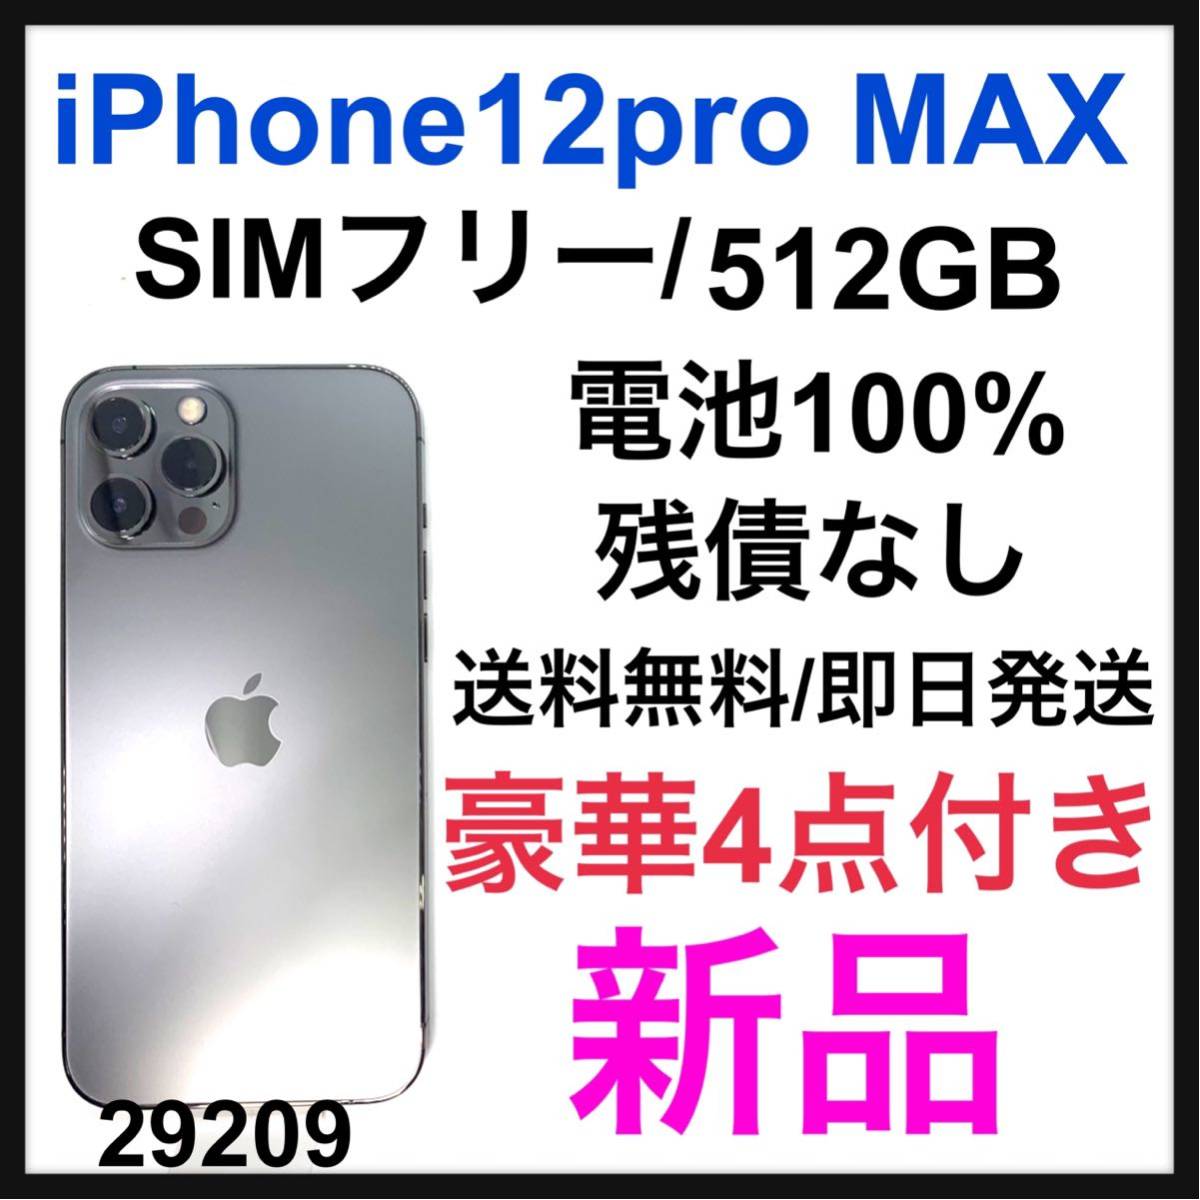 iPhone 12 pro 256GB SIMフリーモデル グラファイト - library 